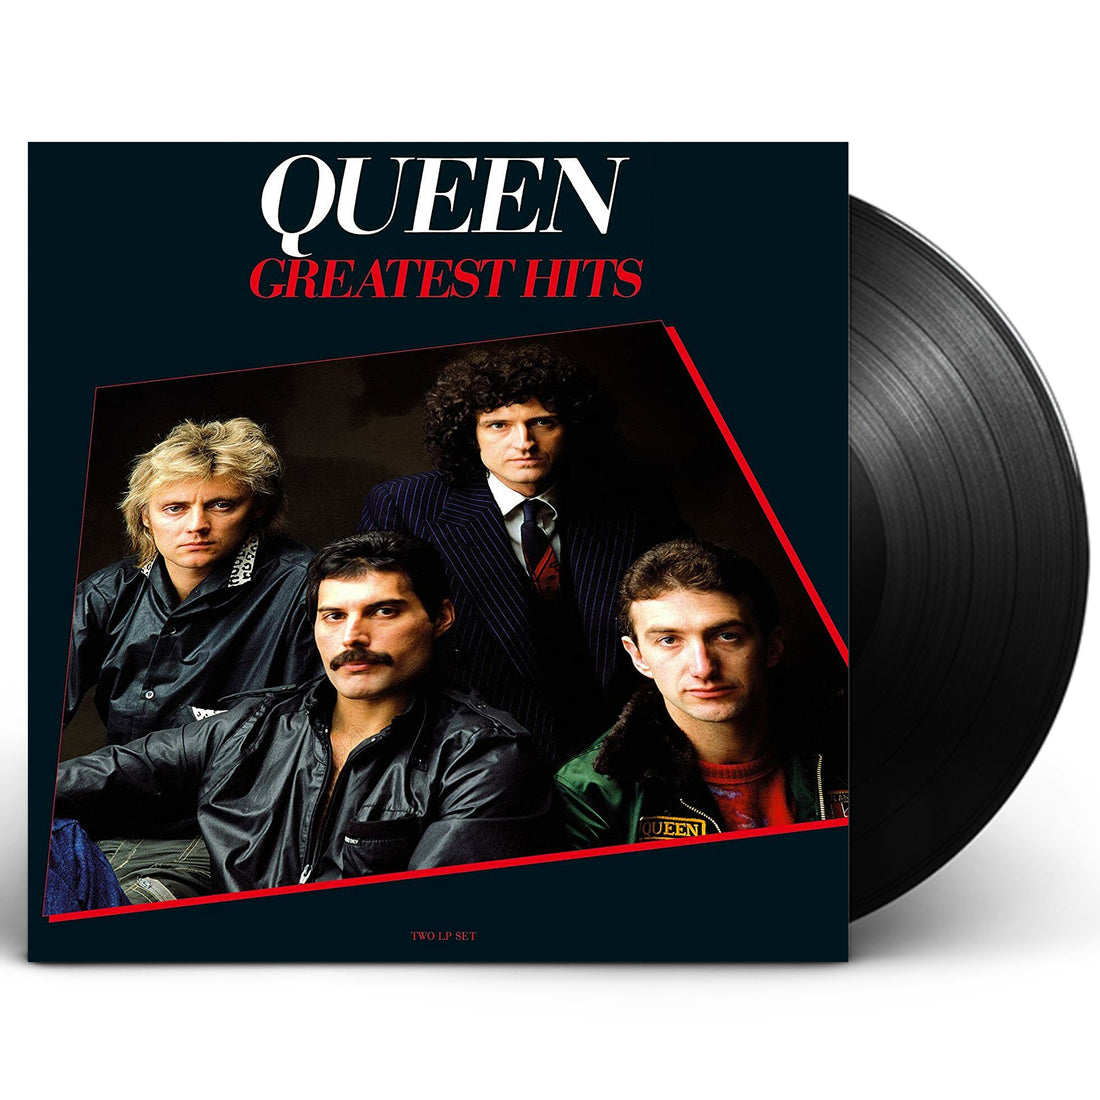 Queen "Greatest Hits" 2xLP 180 Gram Vinyl